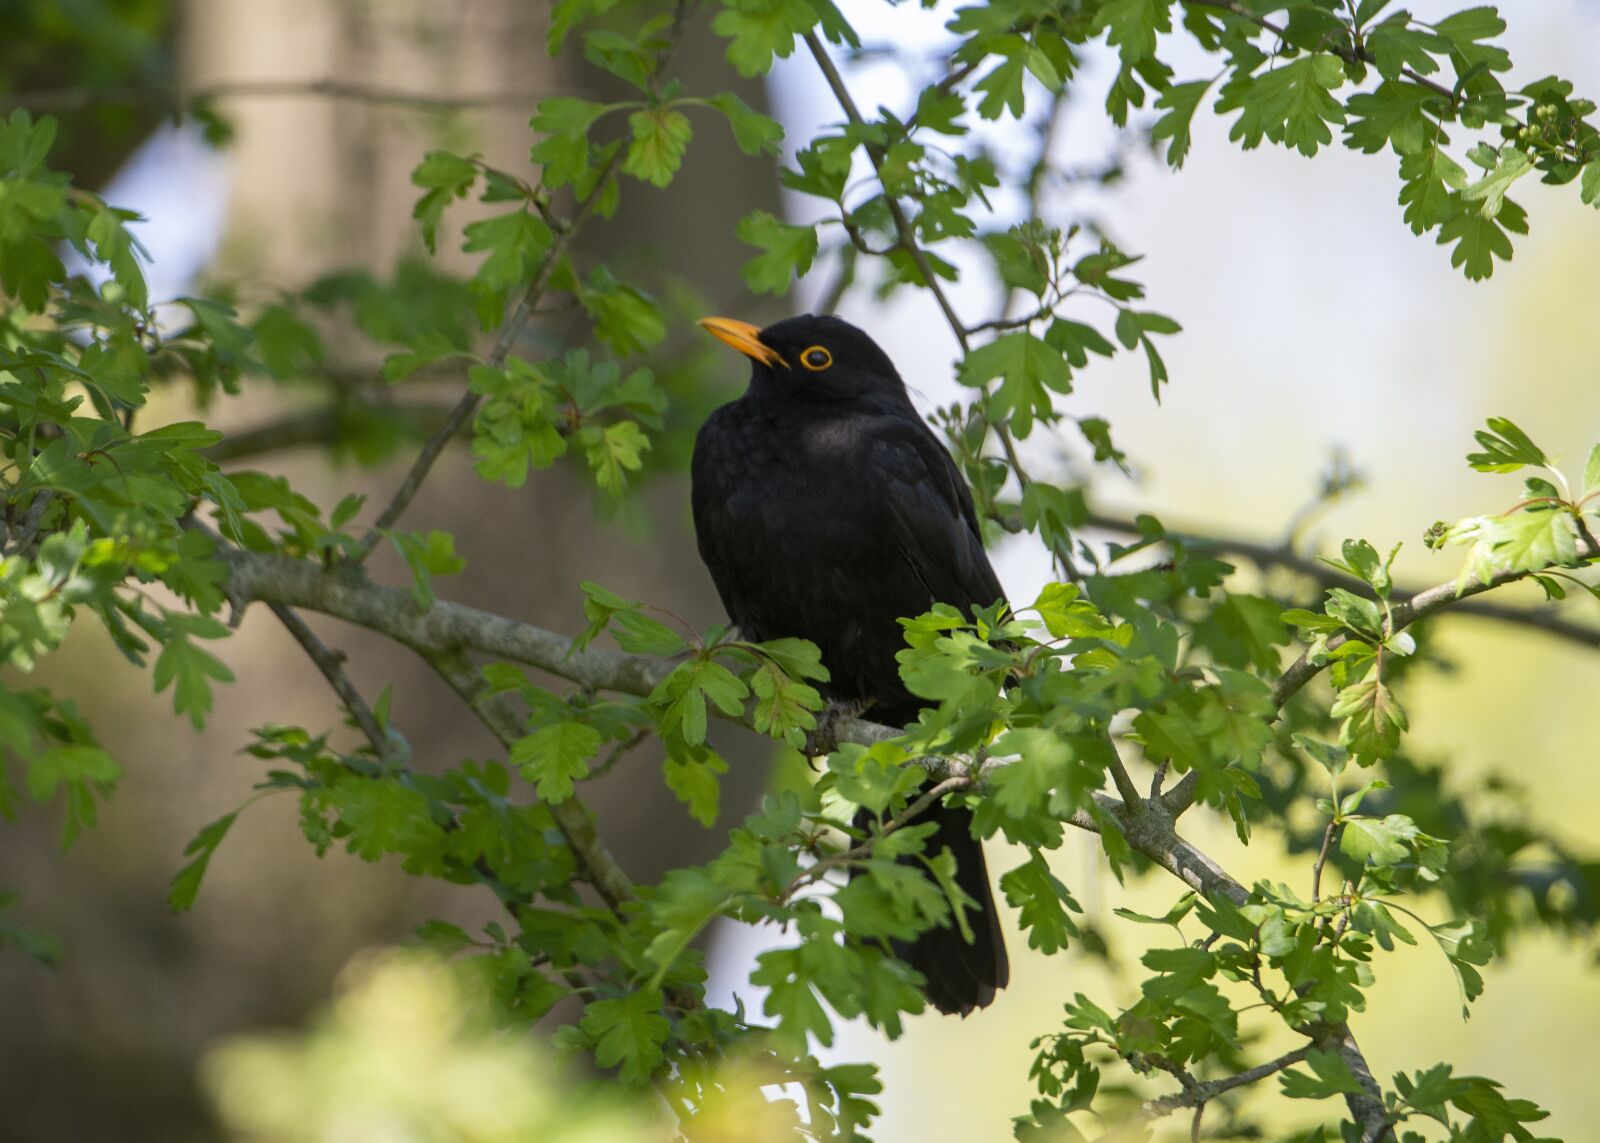 Nikon D610 sample photo. Blackbird, bird, nature photography